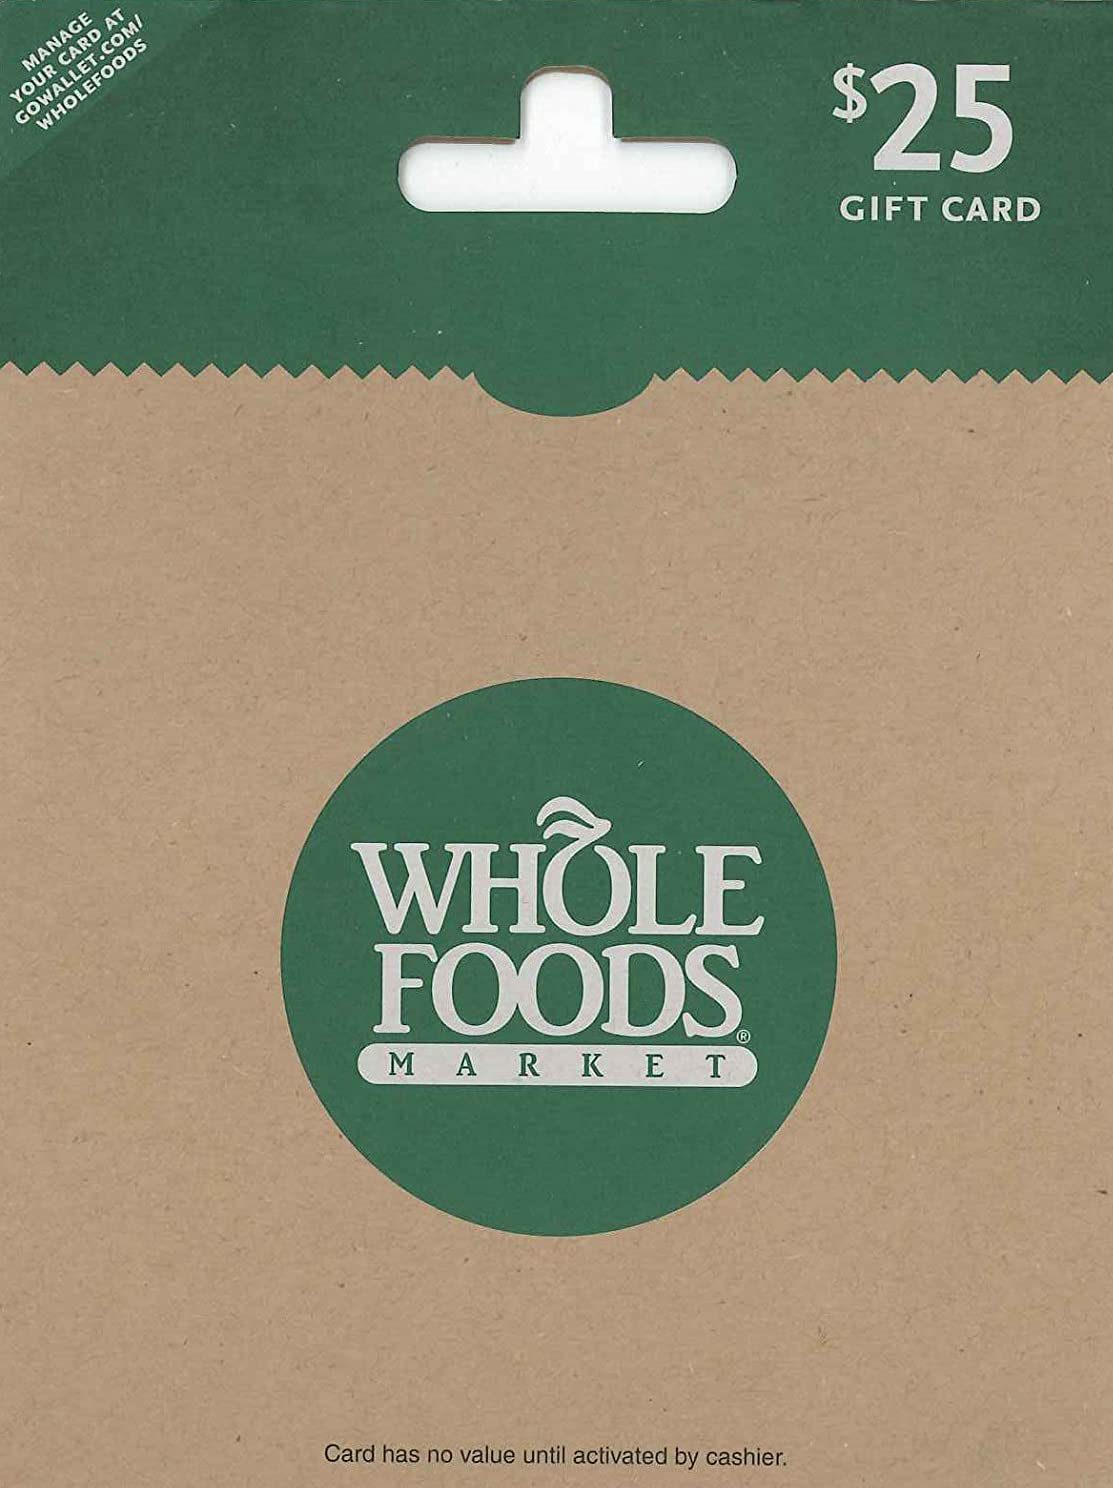 Whole Foods e-gift card